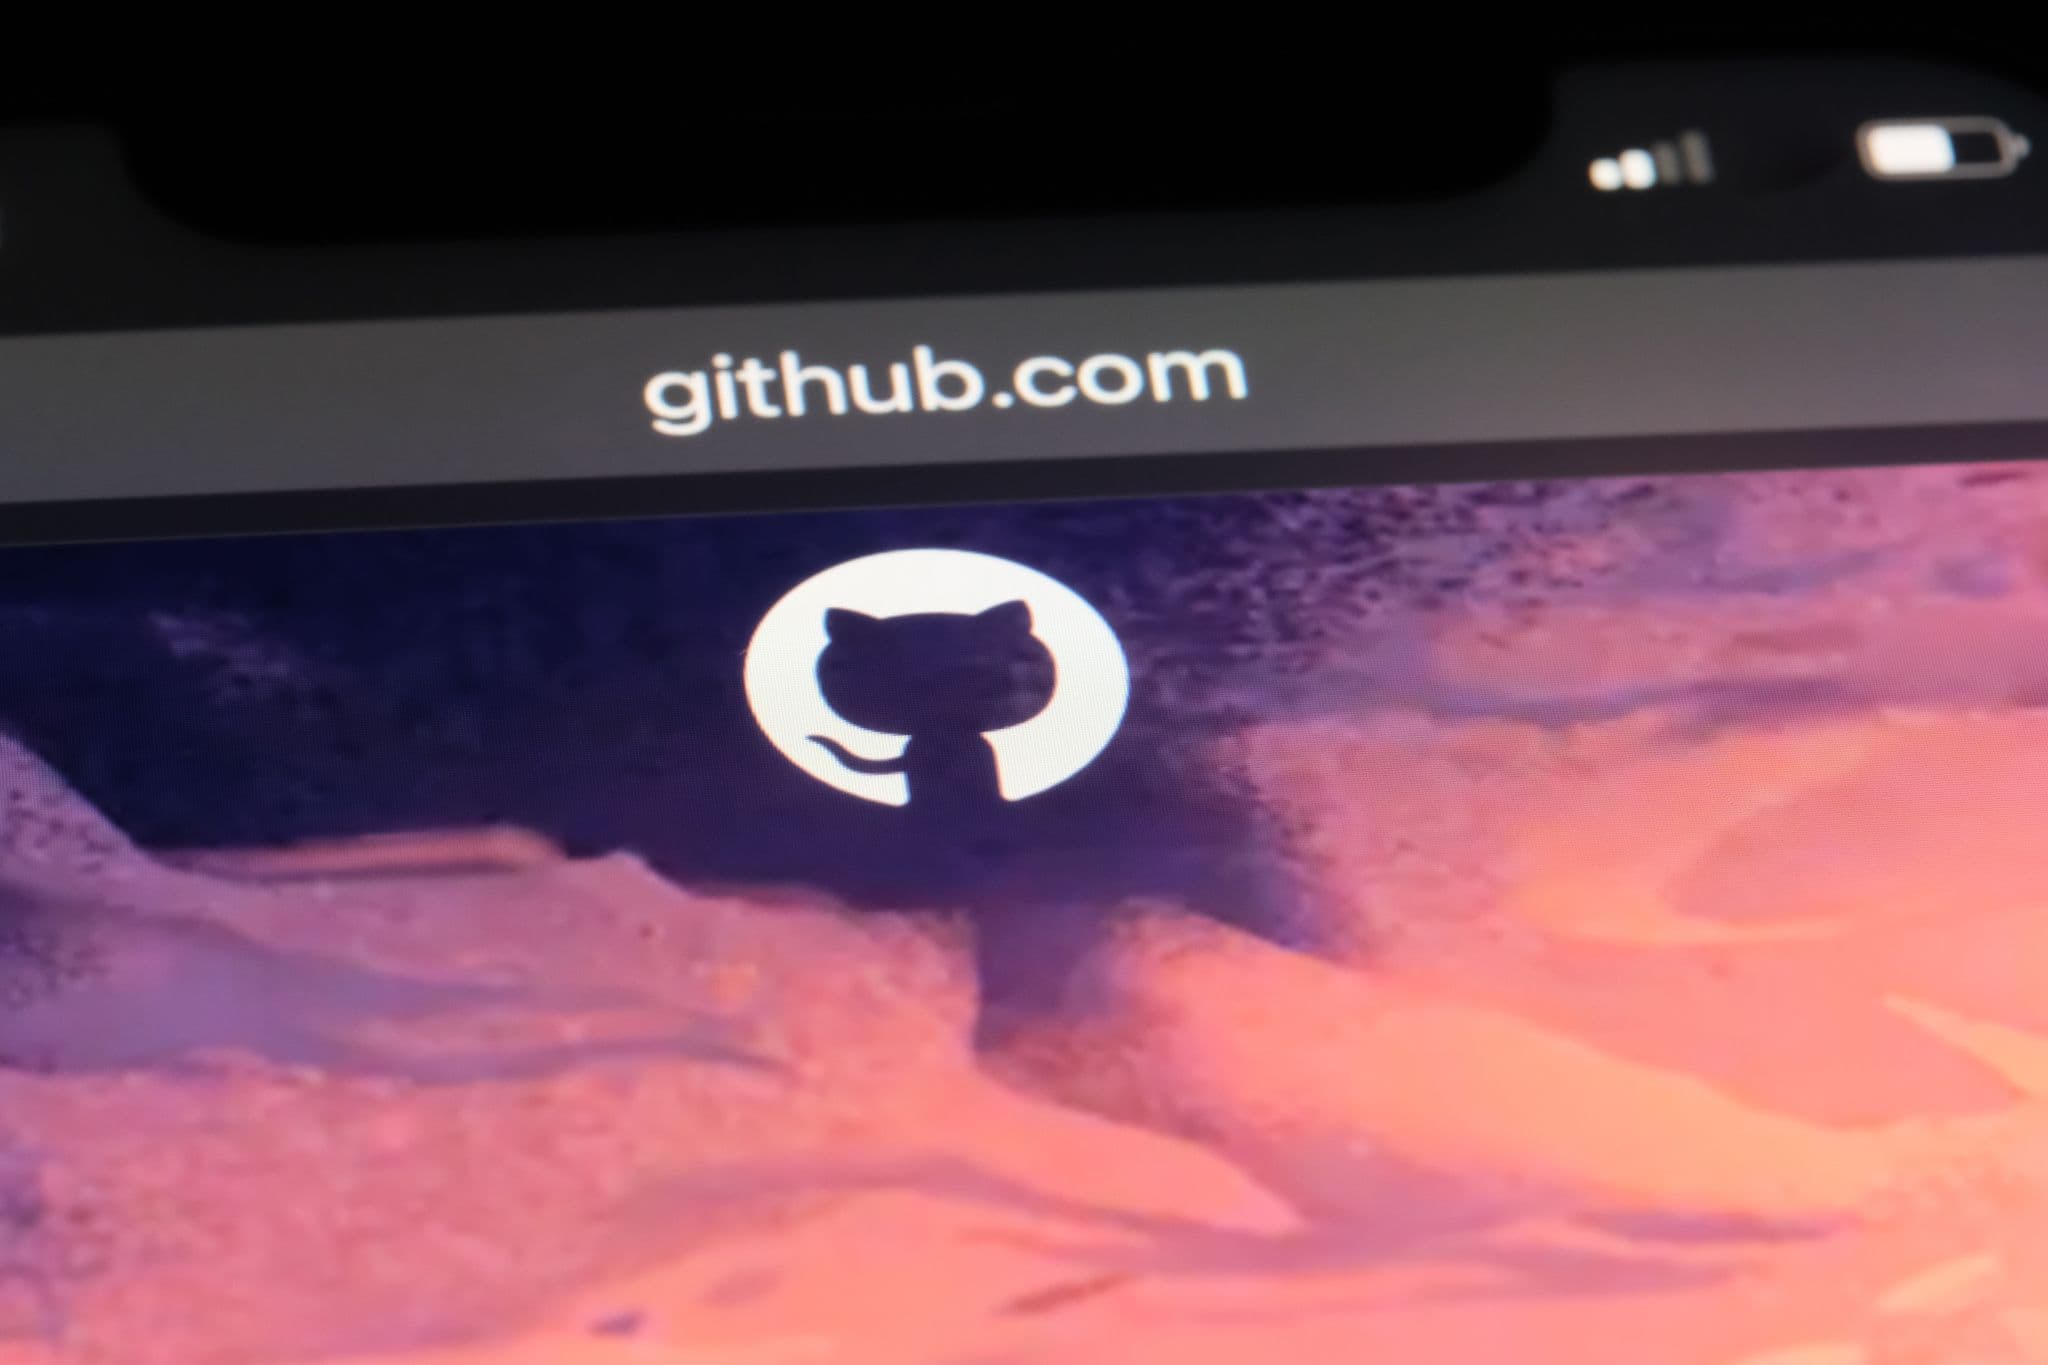 Kritische Sicherheitslücke in GitHub Enterprise Server entdeckt und behoben